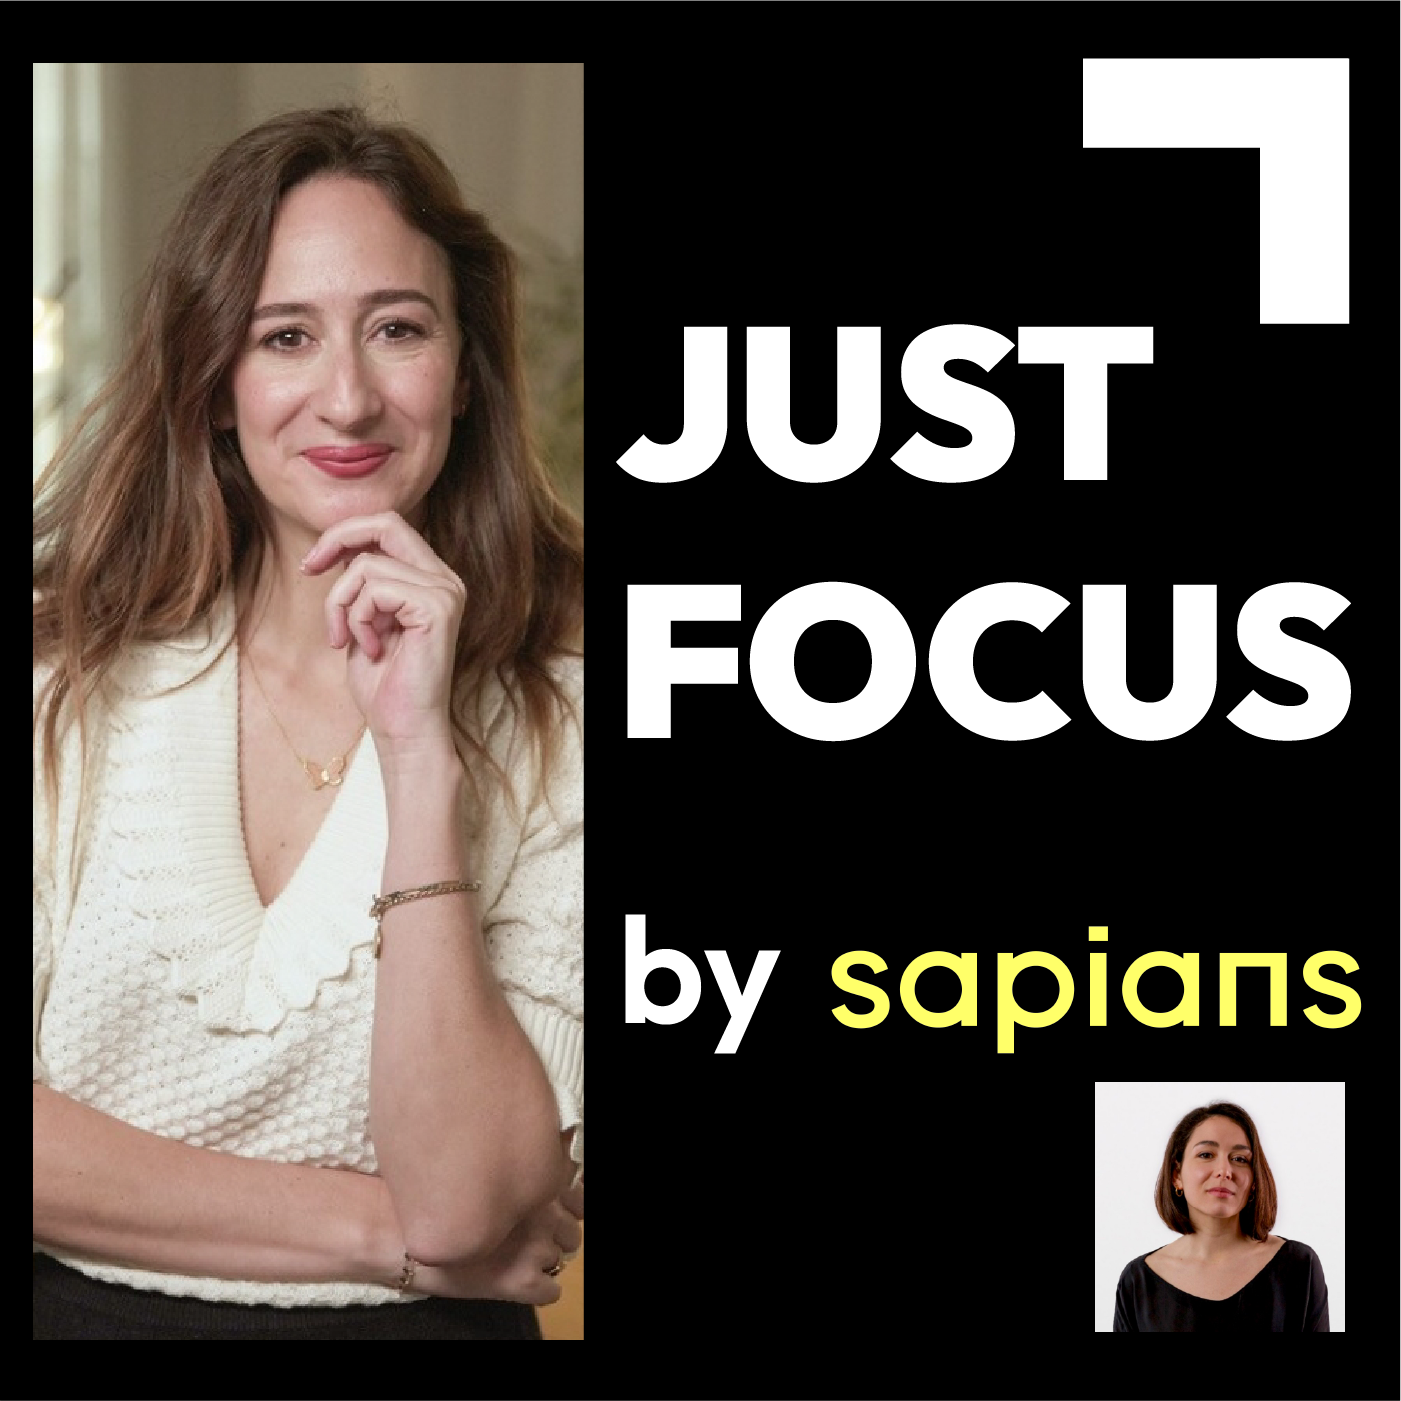 celine-lazorthes-podcast-just-focus-sapians